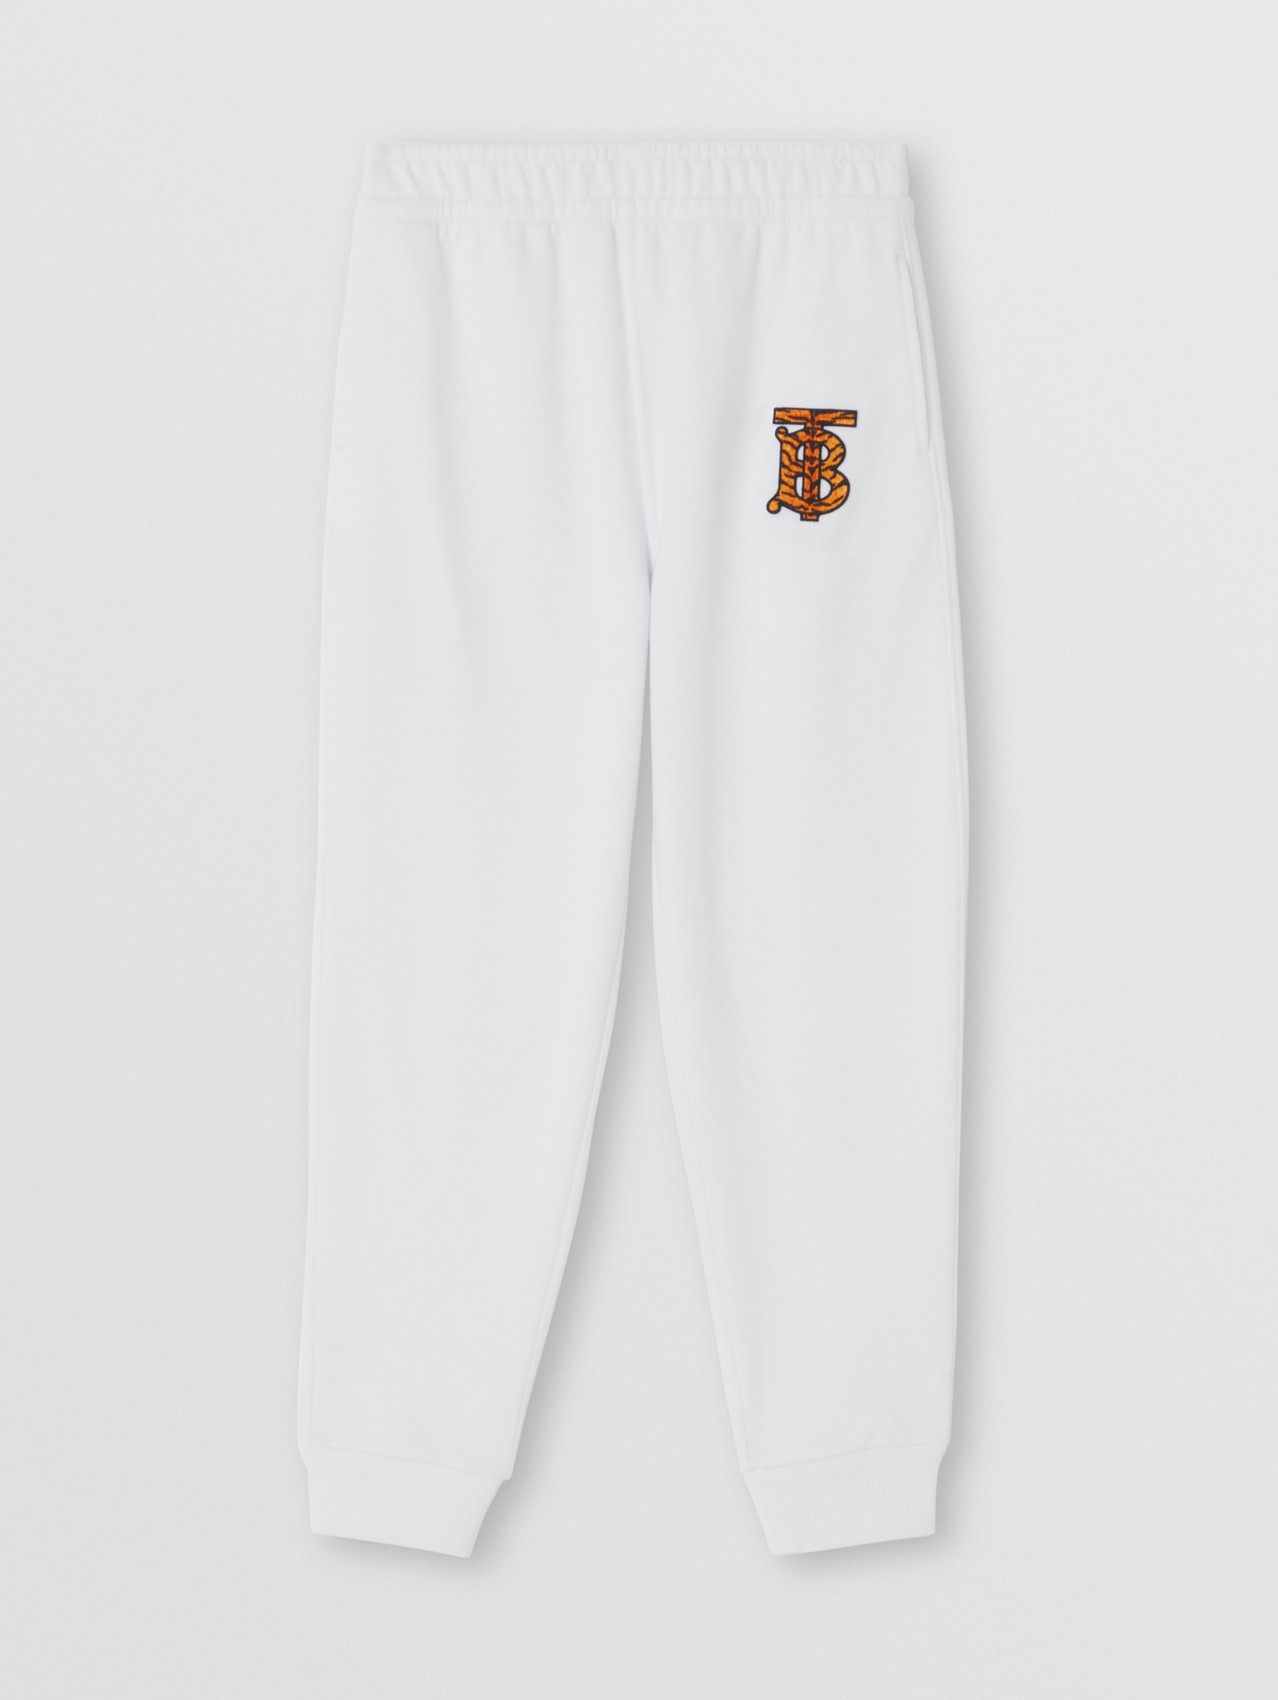 Pantalones de jogging en algodón con motivo de monograma (Blanco)